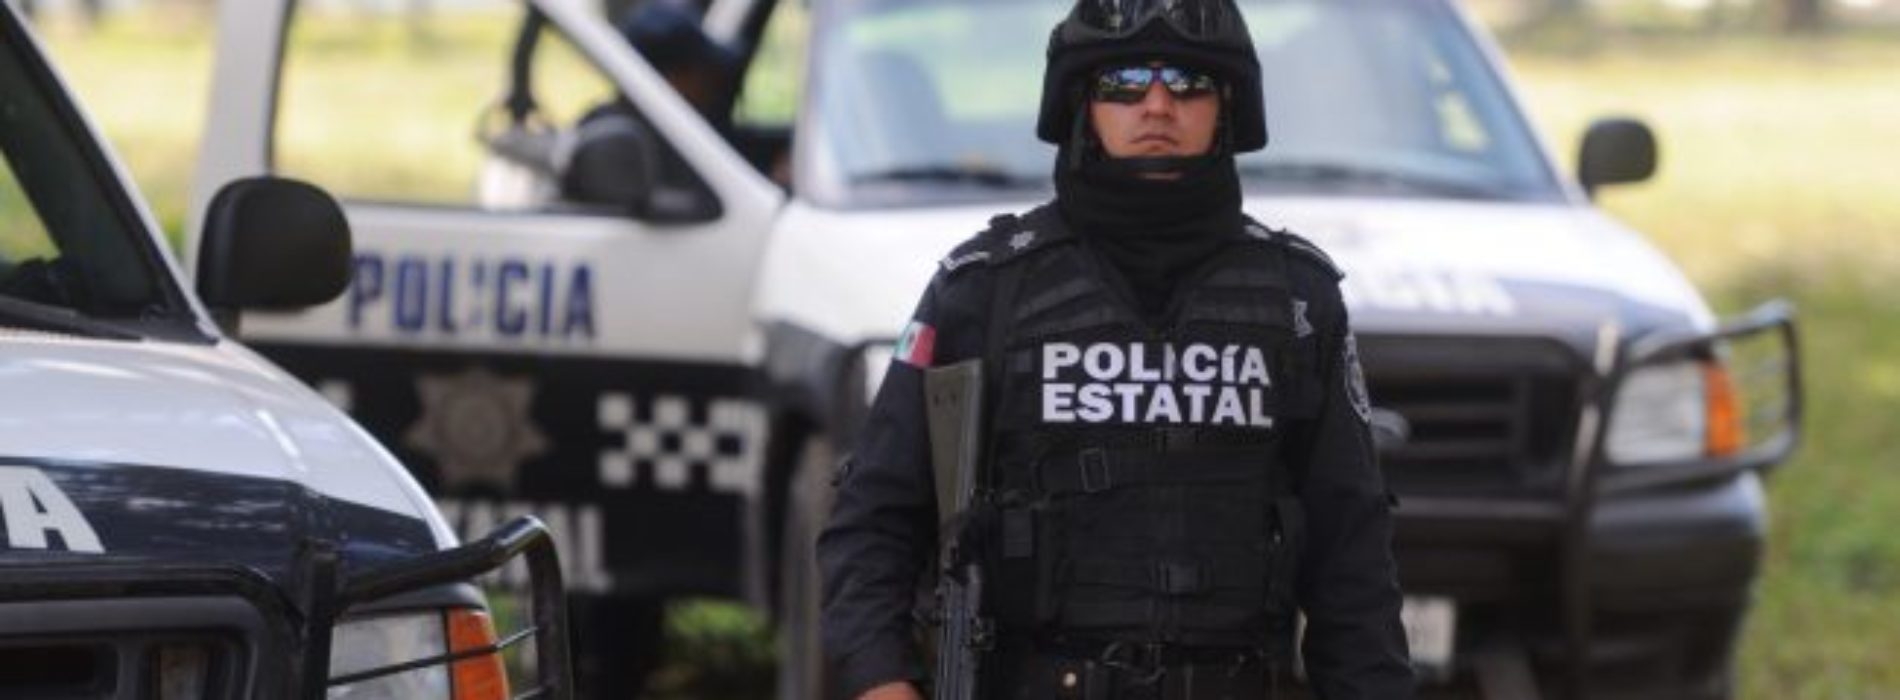 Resultados mensuales en materia de seguridad en
Oaxaca